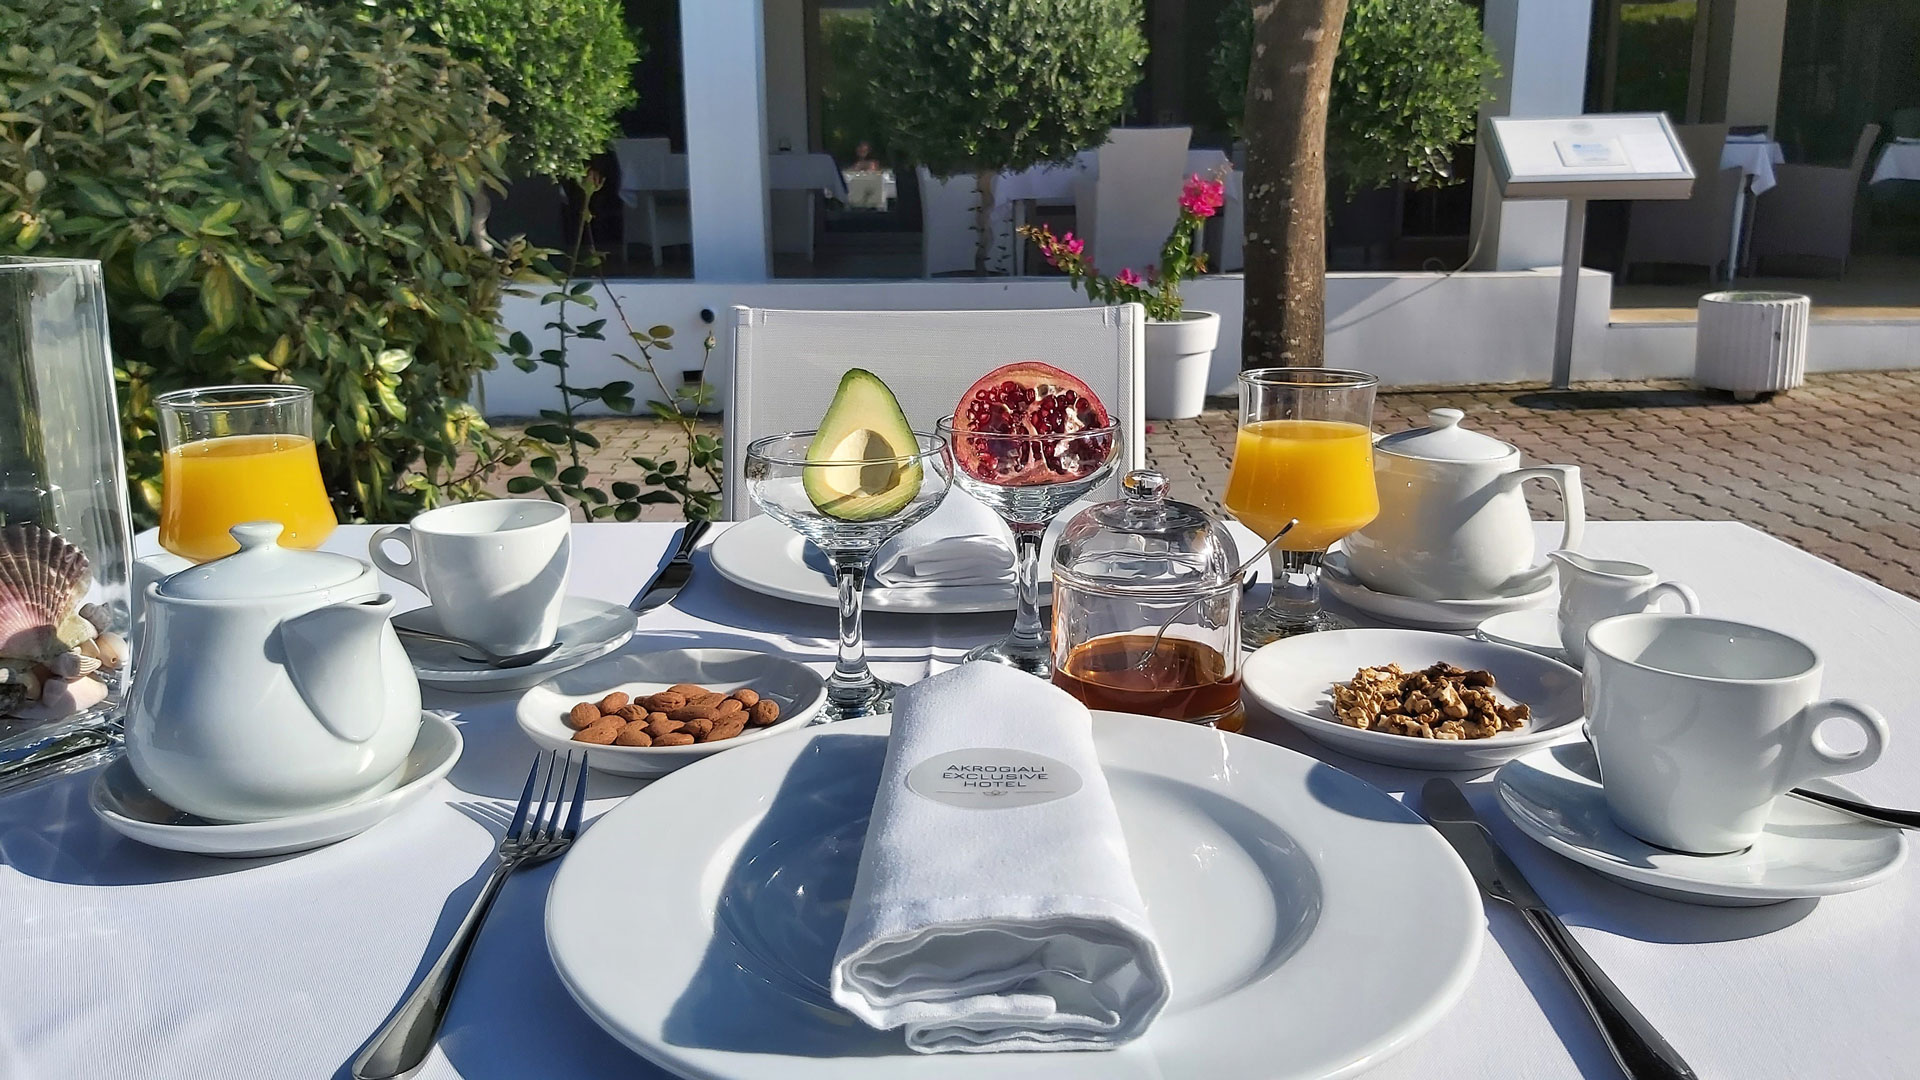 Εκλεκτο πρωινο στο ξενοδοχειο ΑΚΡΟΓΙΑΛΙ στο Πολυχρονο Κασσανδρας στη Χαλκιδικη